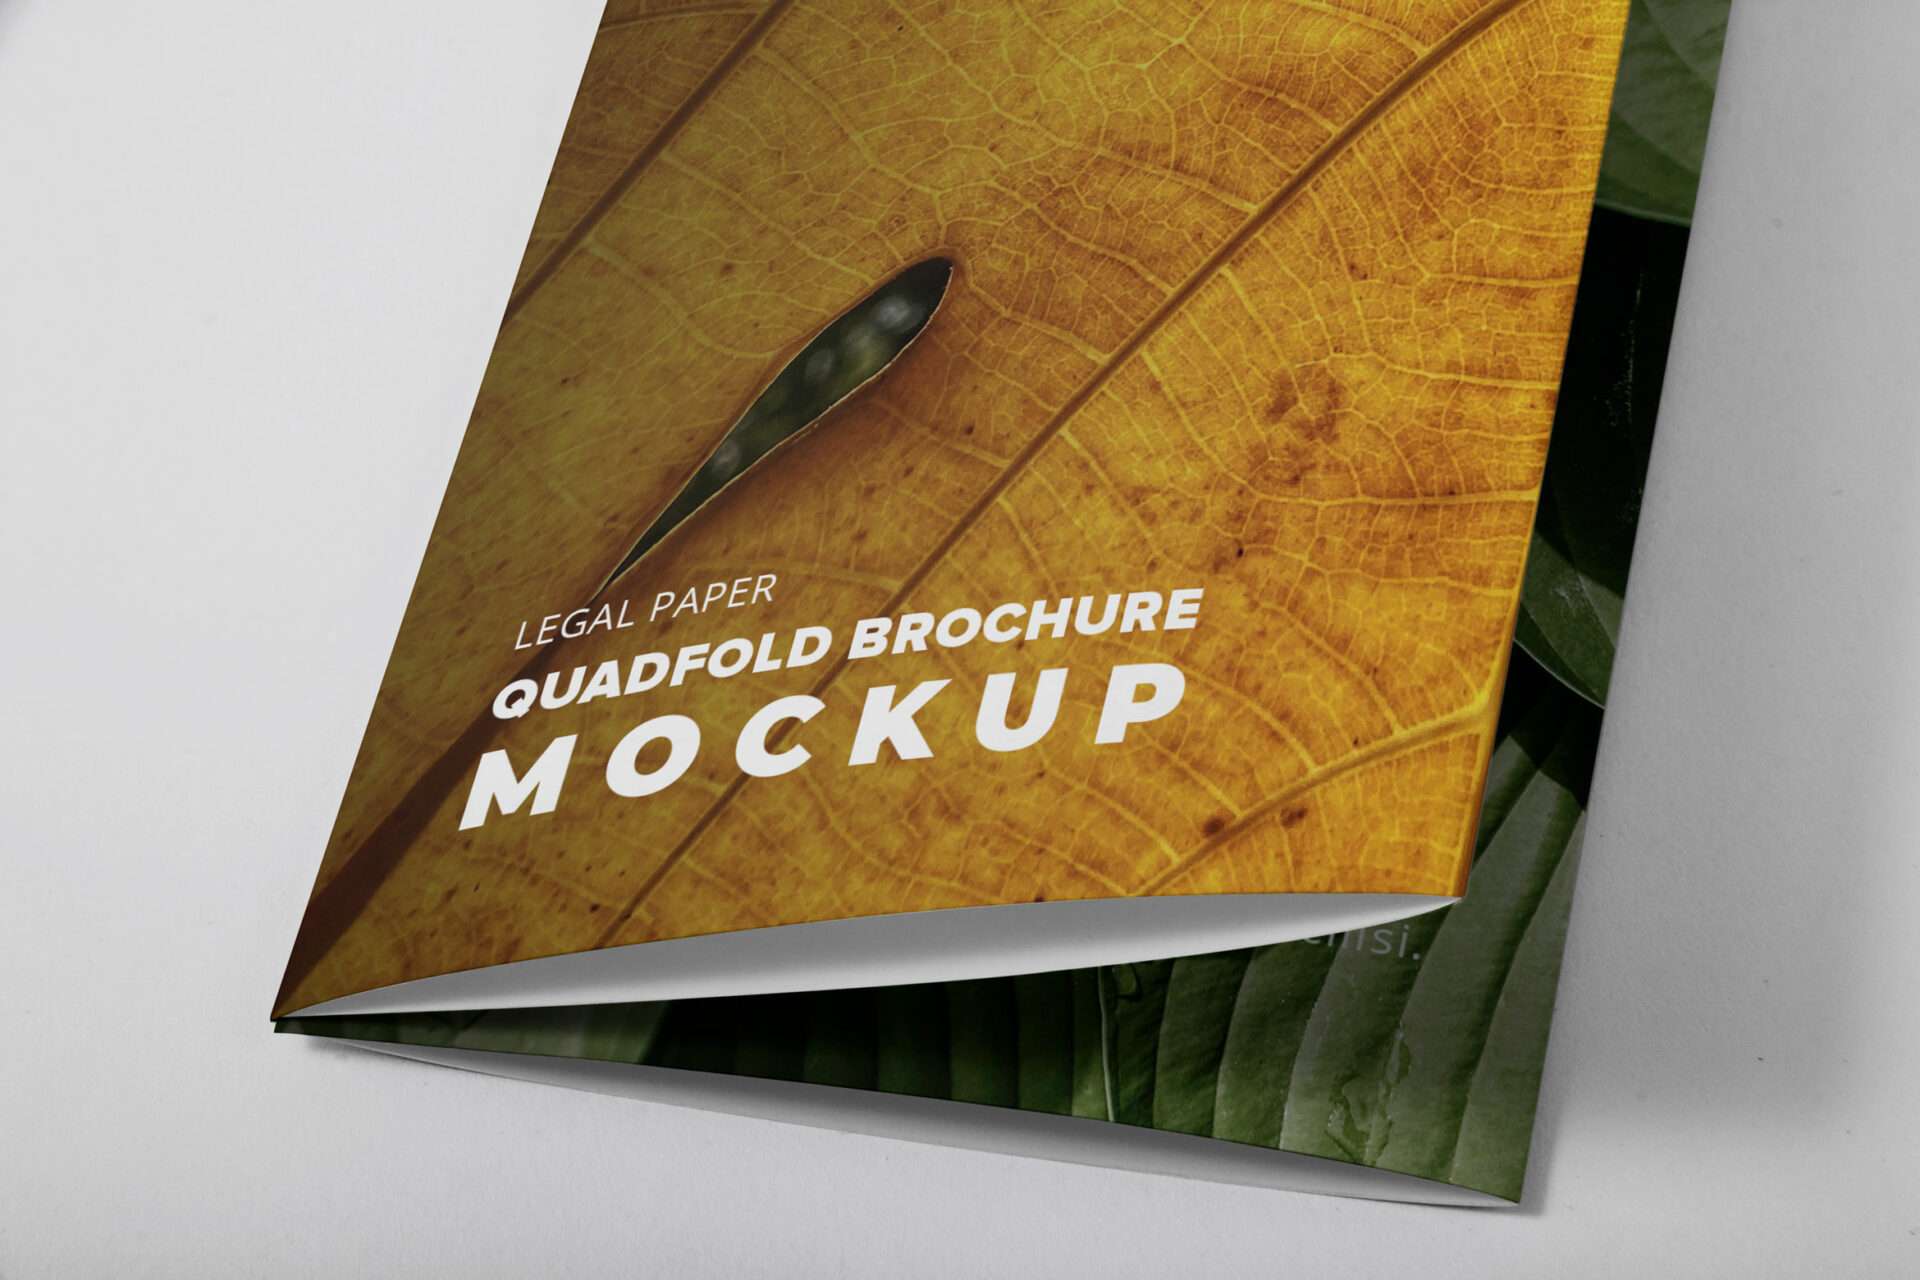 Legal Qadfold Brochure Mockup - Close Up